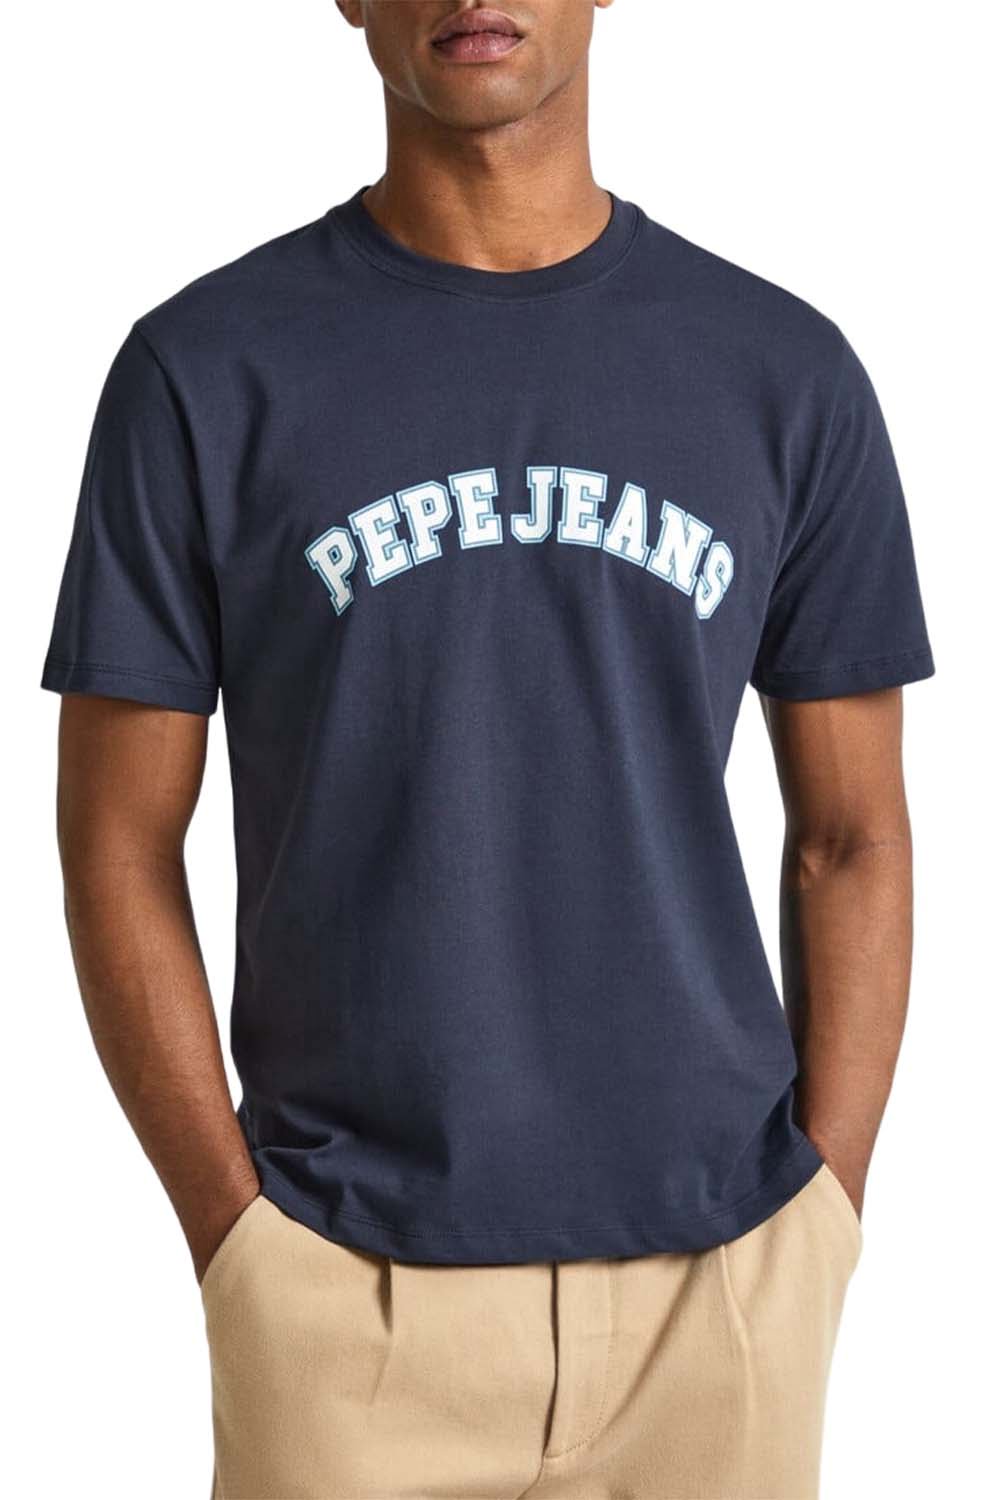 Ανδρική Μπλούζα PEPE JEANS PM509220-594 Μπλε